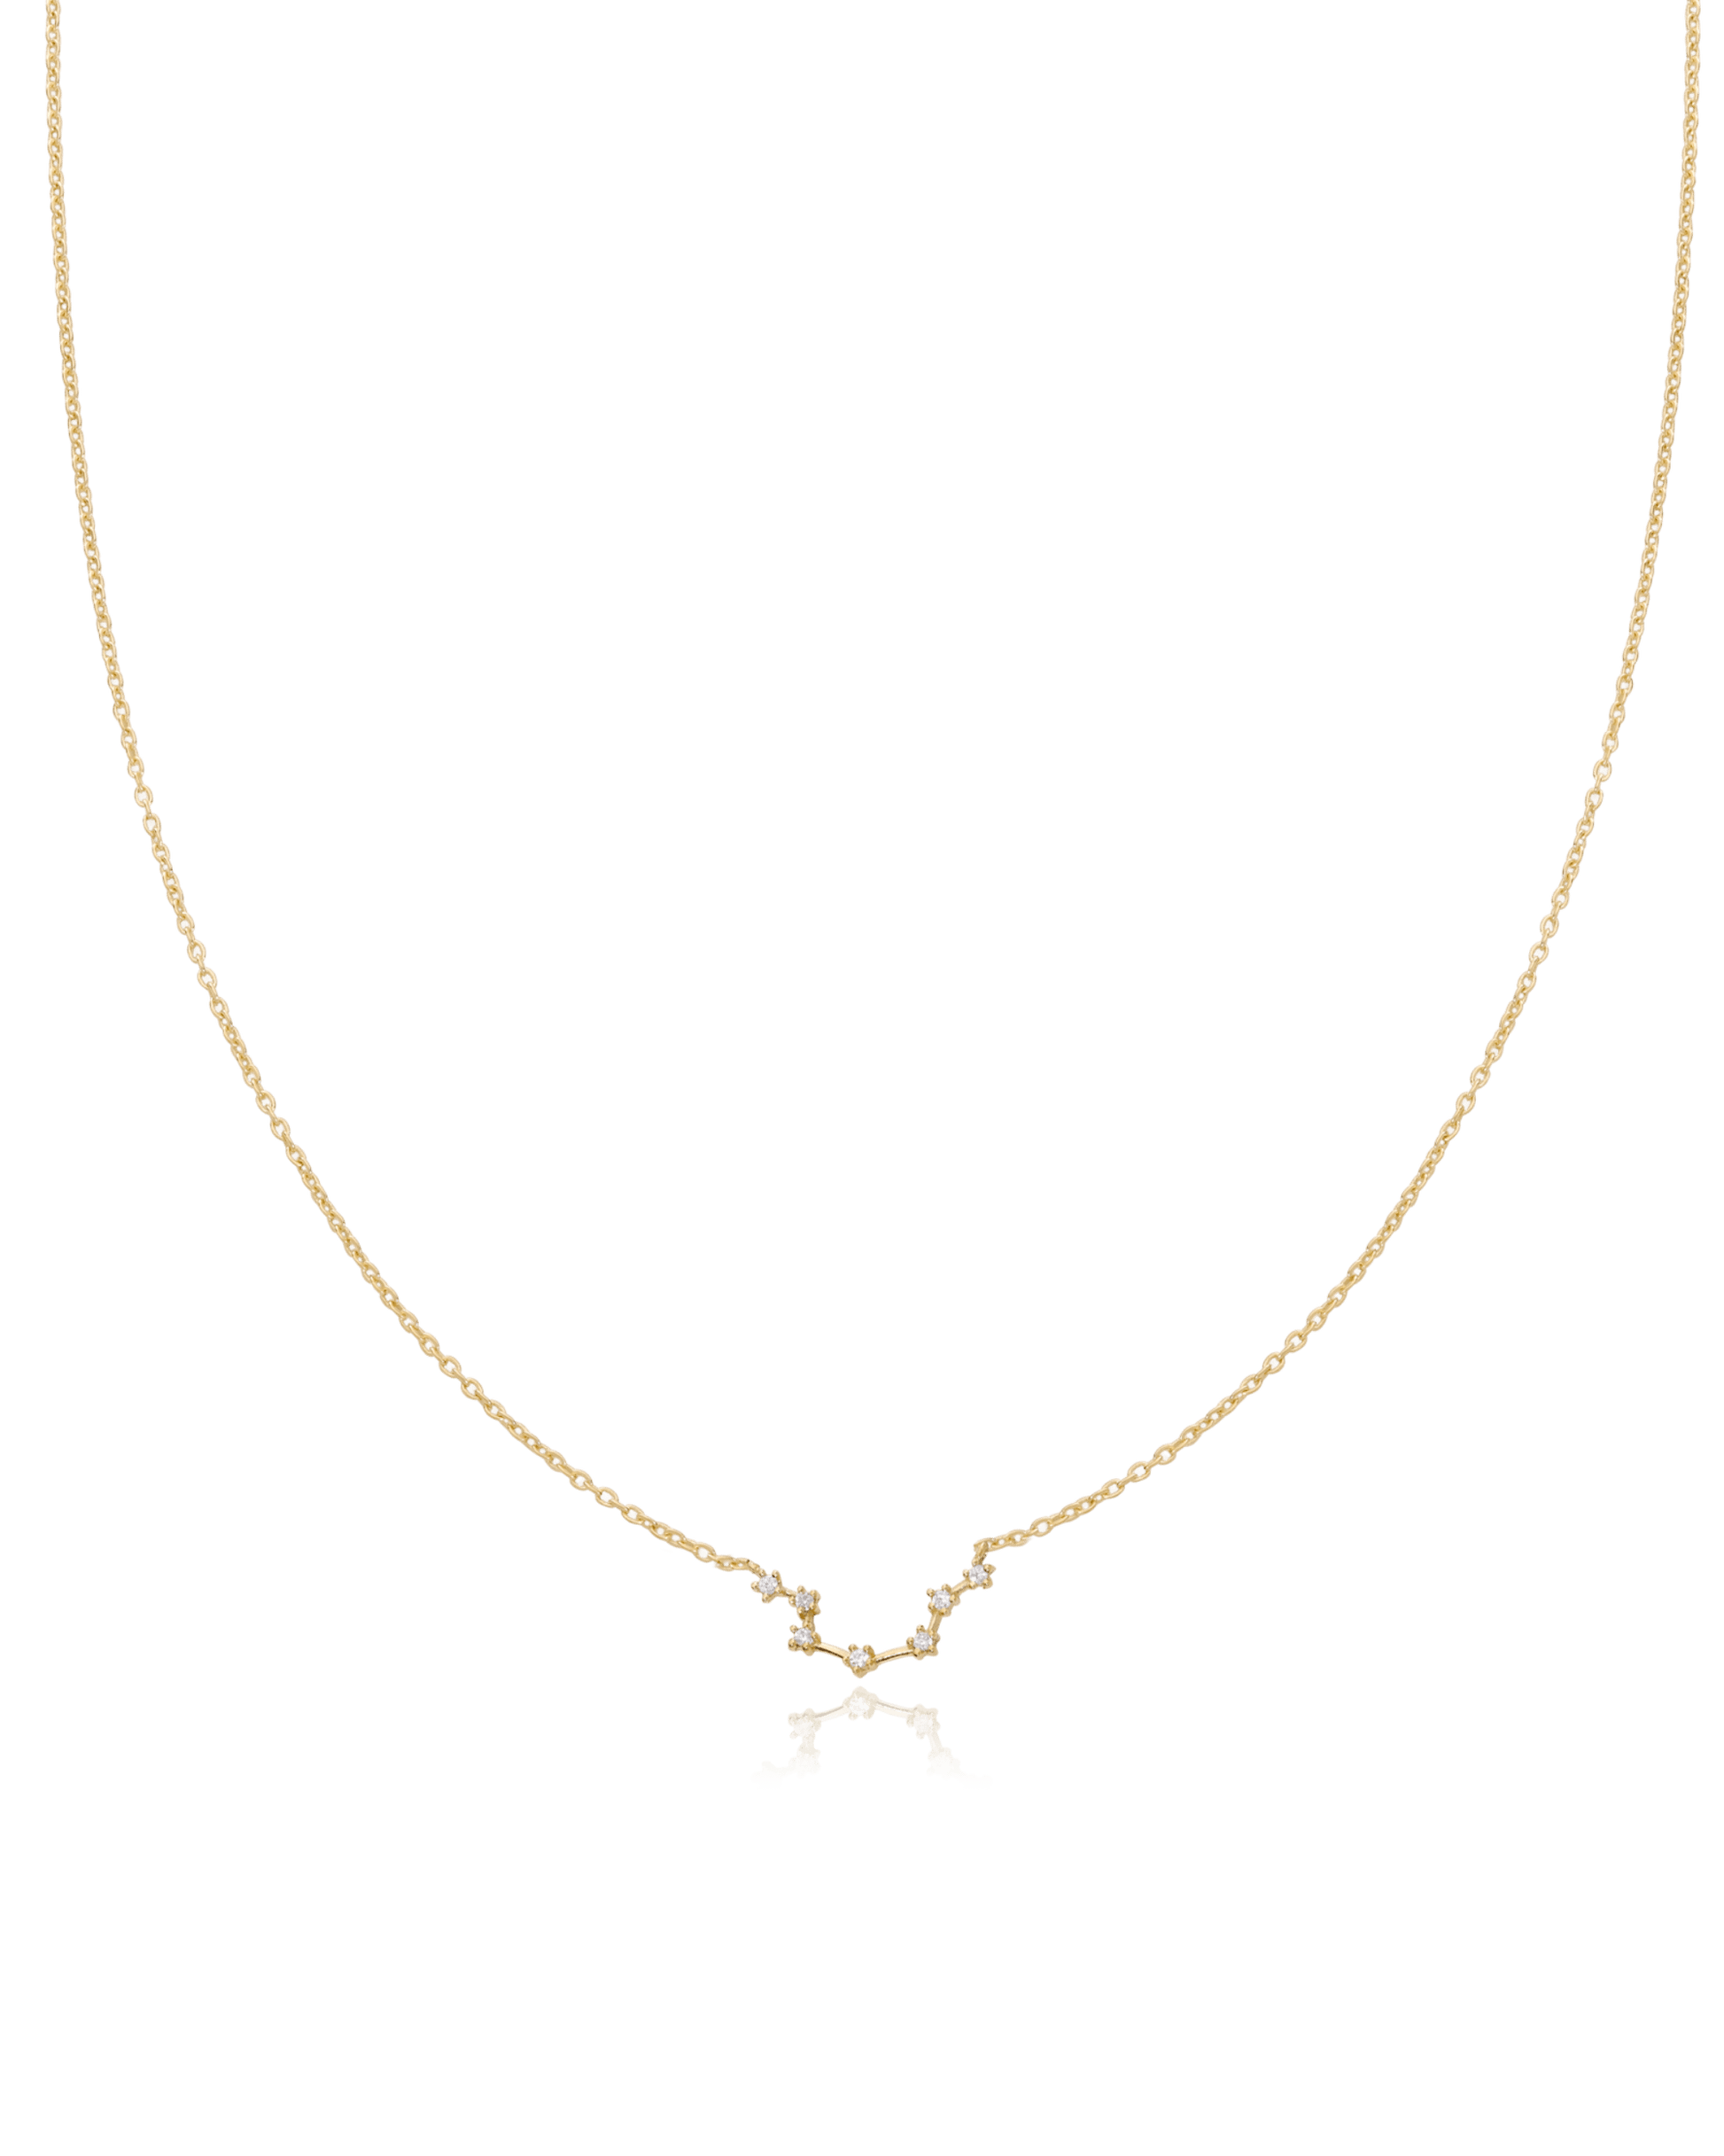 Aquarius Constellation Necklace - 925 Sterling Silver Necklaces magal-dev 